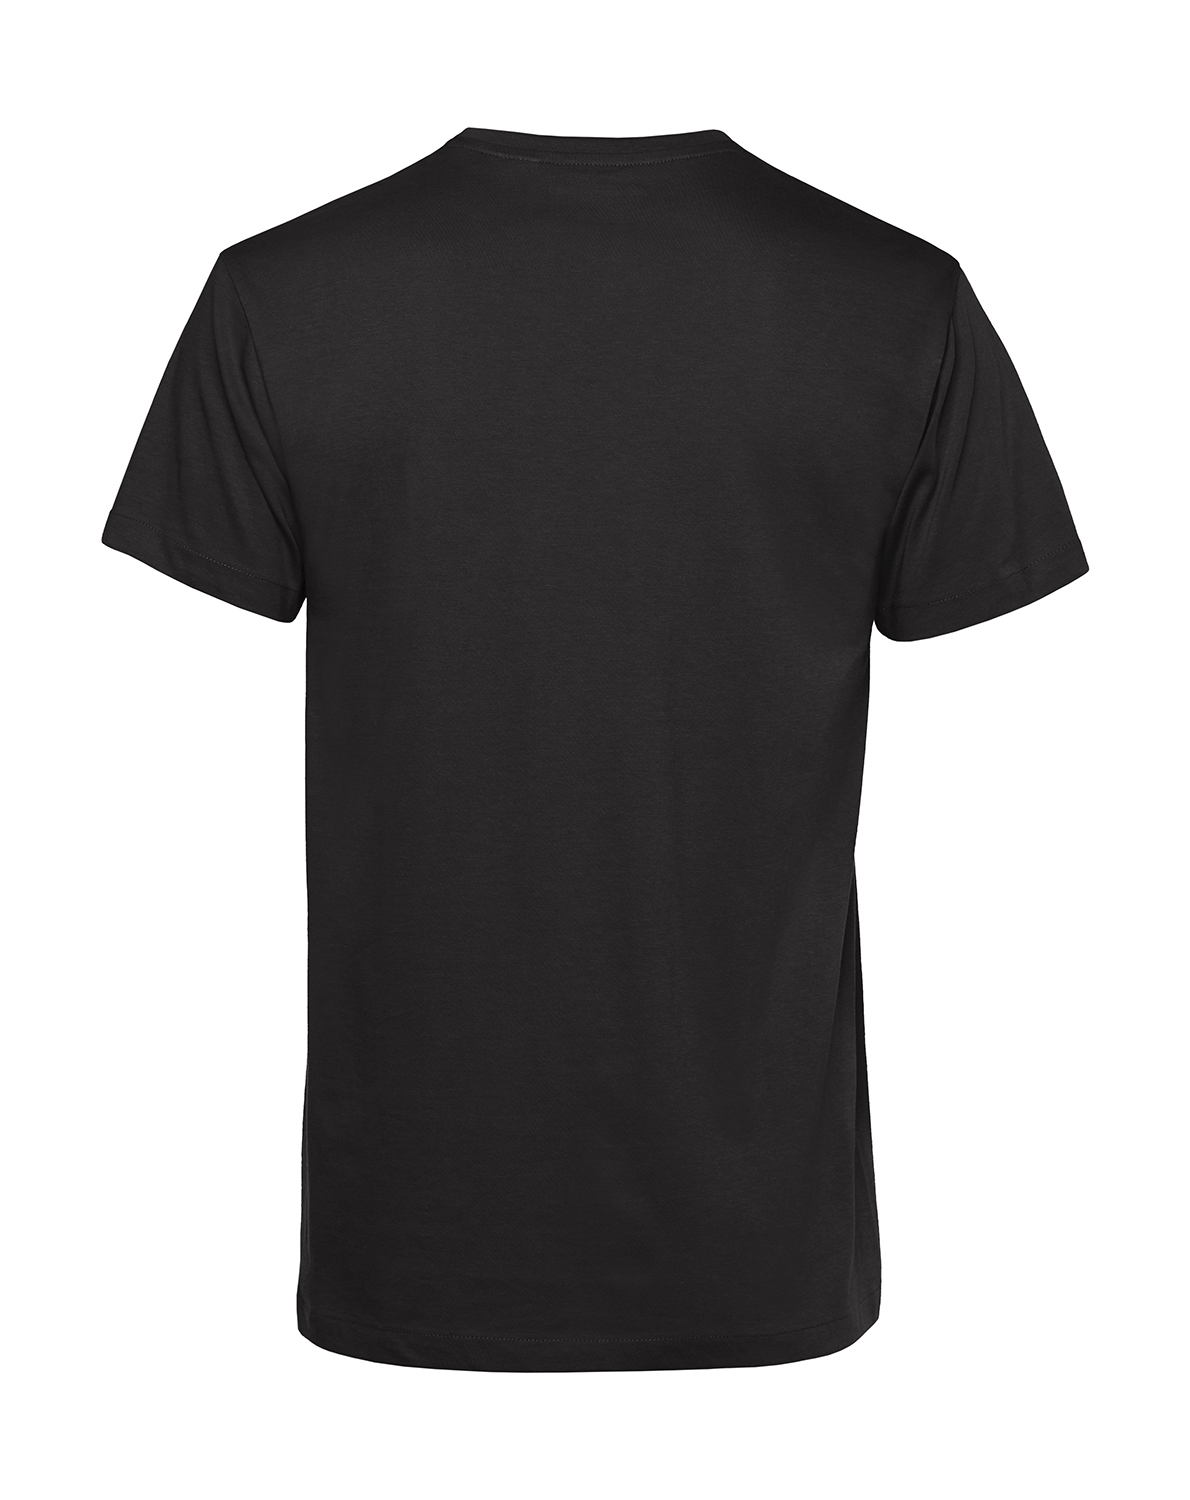 Nachhaltiges T-Shirt Herren 2Takt - Wenn Du keine besitzt Schwalbe